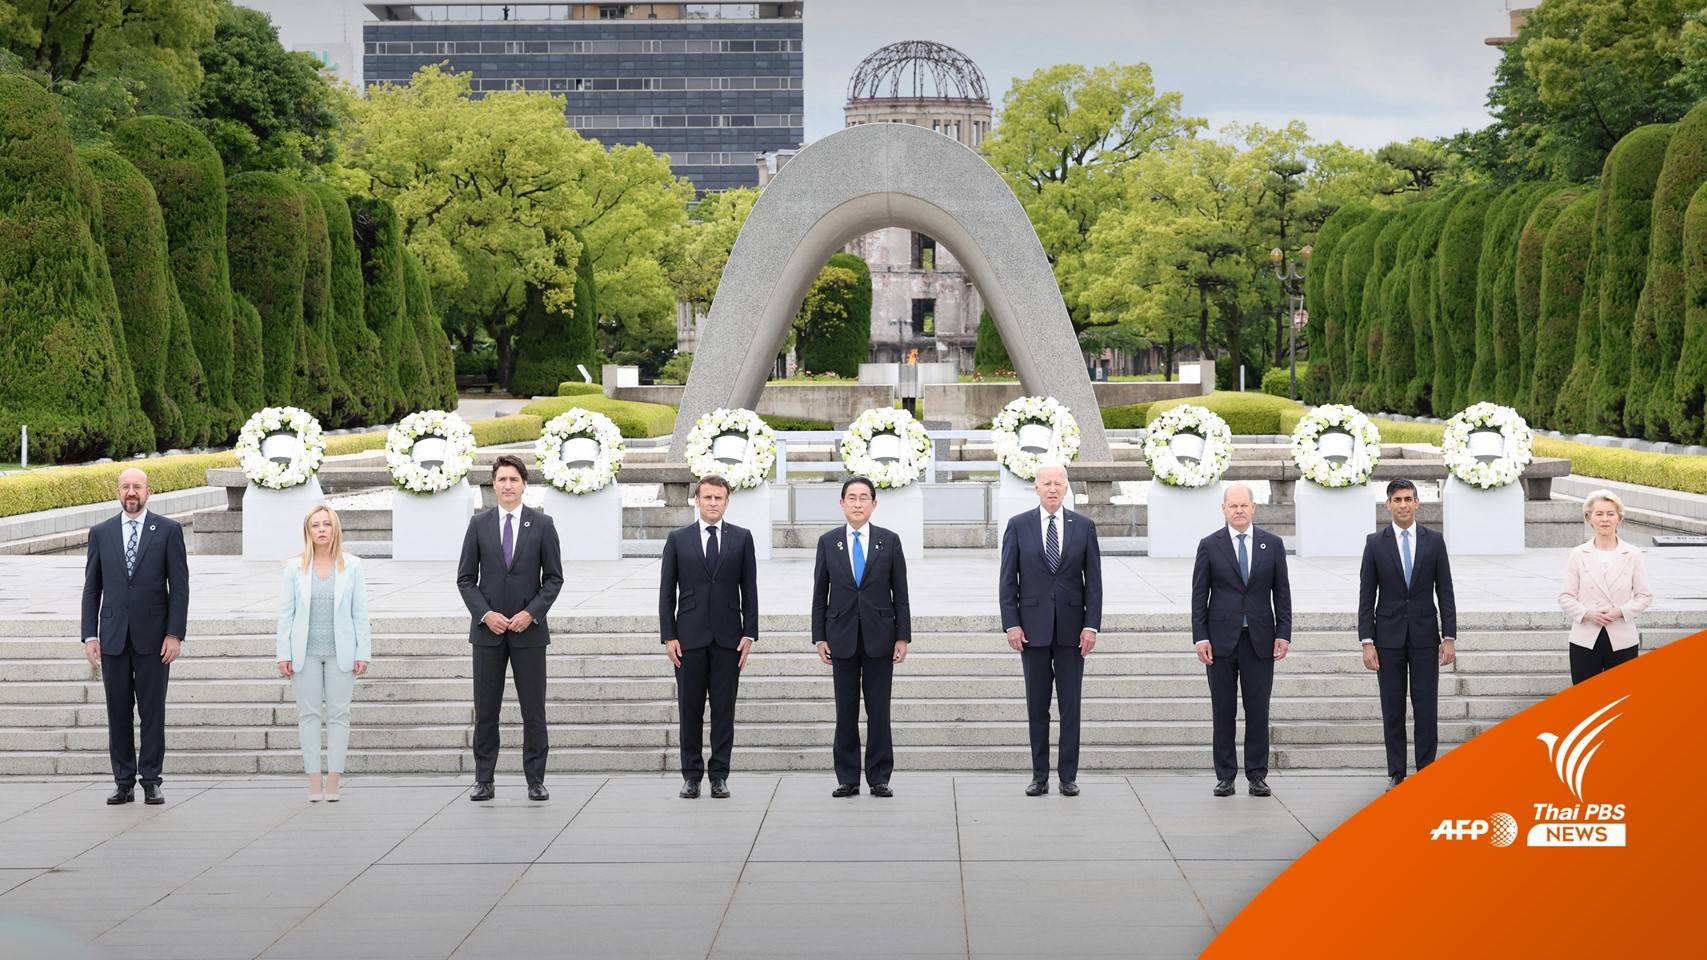 ญี่ปุ่นคุมเข้ม! ความปลอดภัยประชุม G7 หวั่นซ้ำรอยผู้นำถูกทำร้าย 